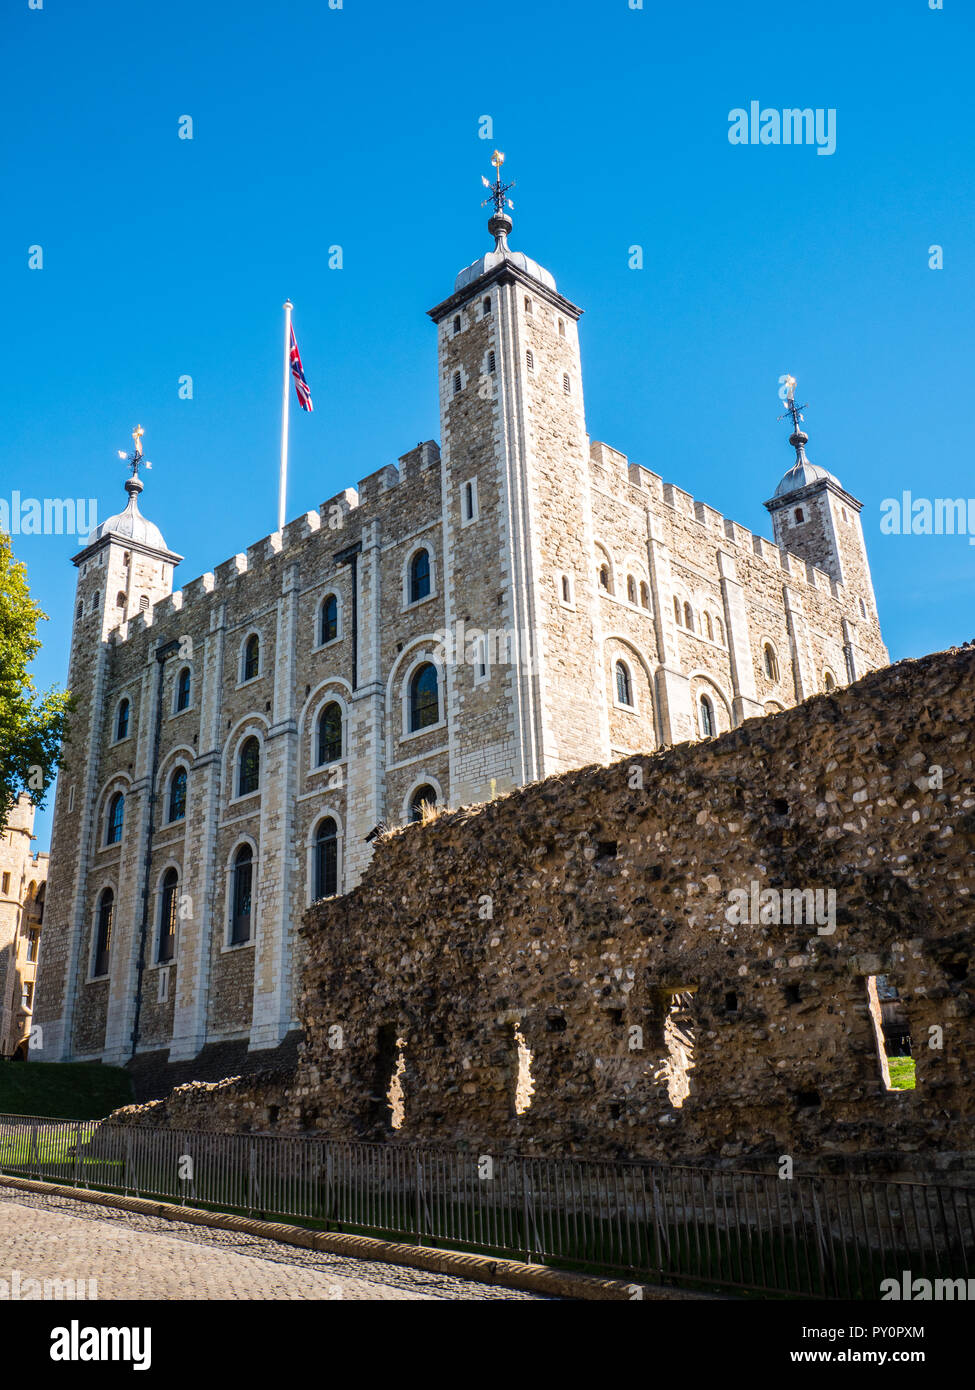 La Tour Blanche construite par Guillaume le Conquérant en 1078, la Tour de Londres, Angleterre, RU, FR. Banque D'Images